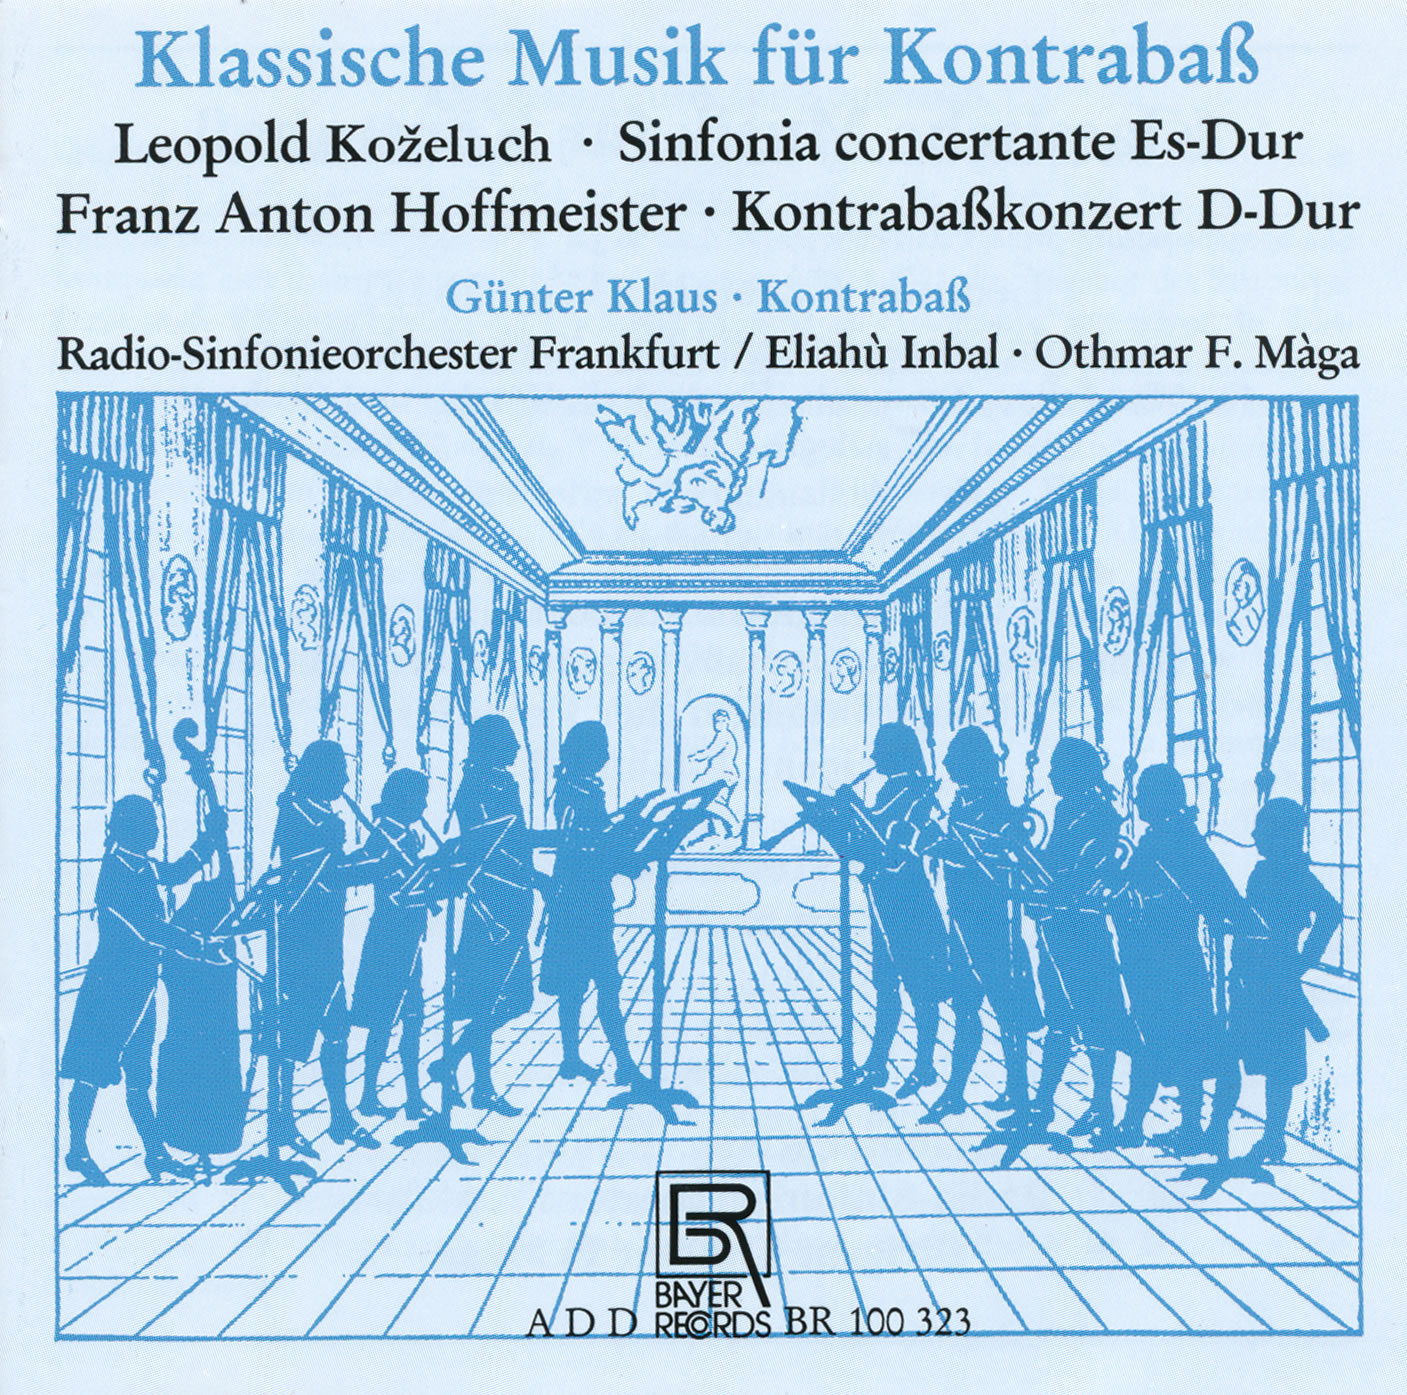 Klassische Musik für Kontrabass